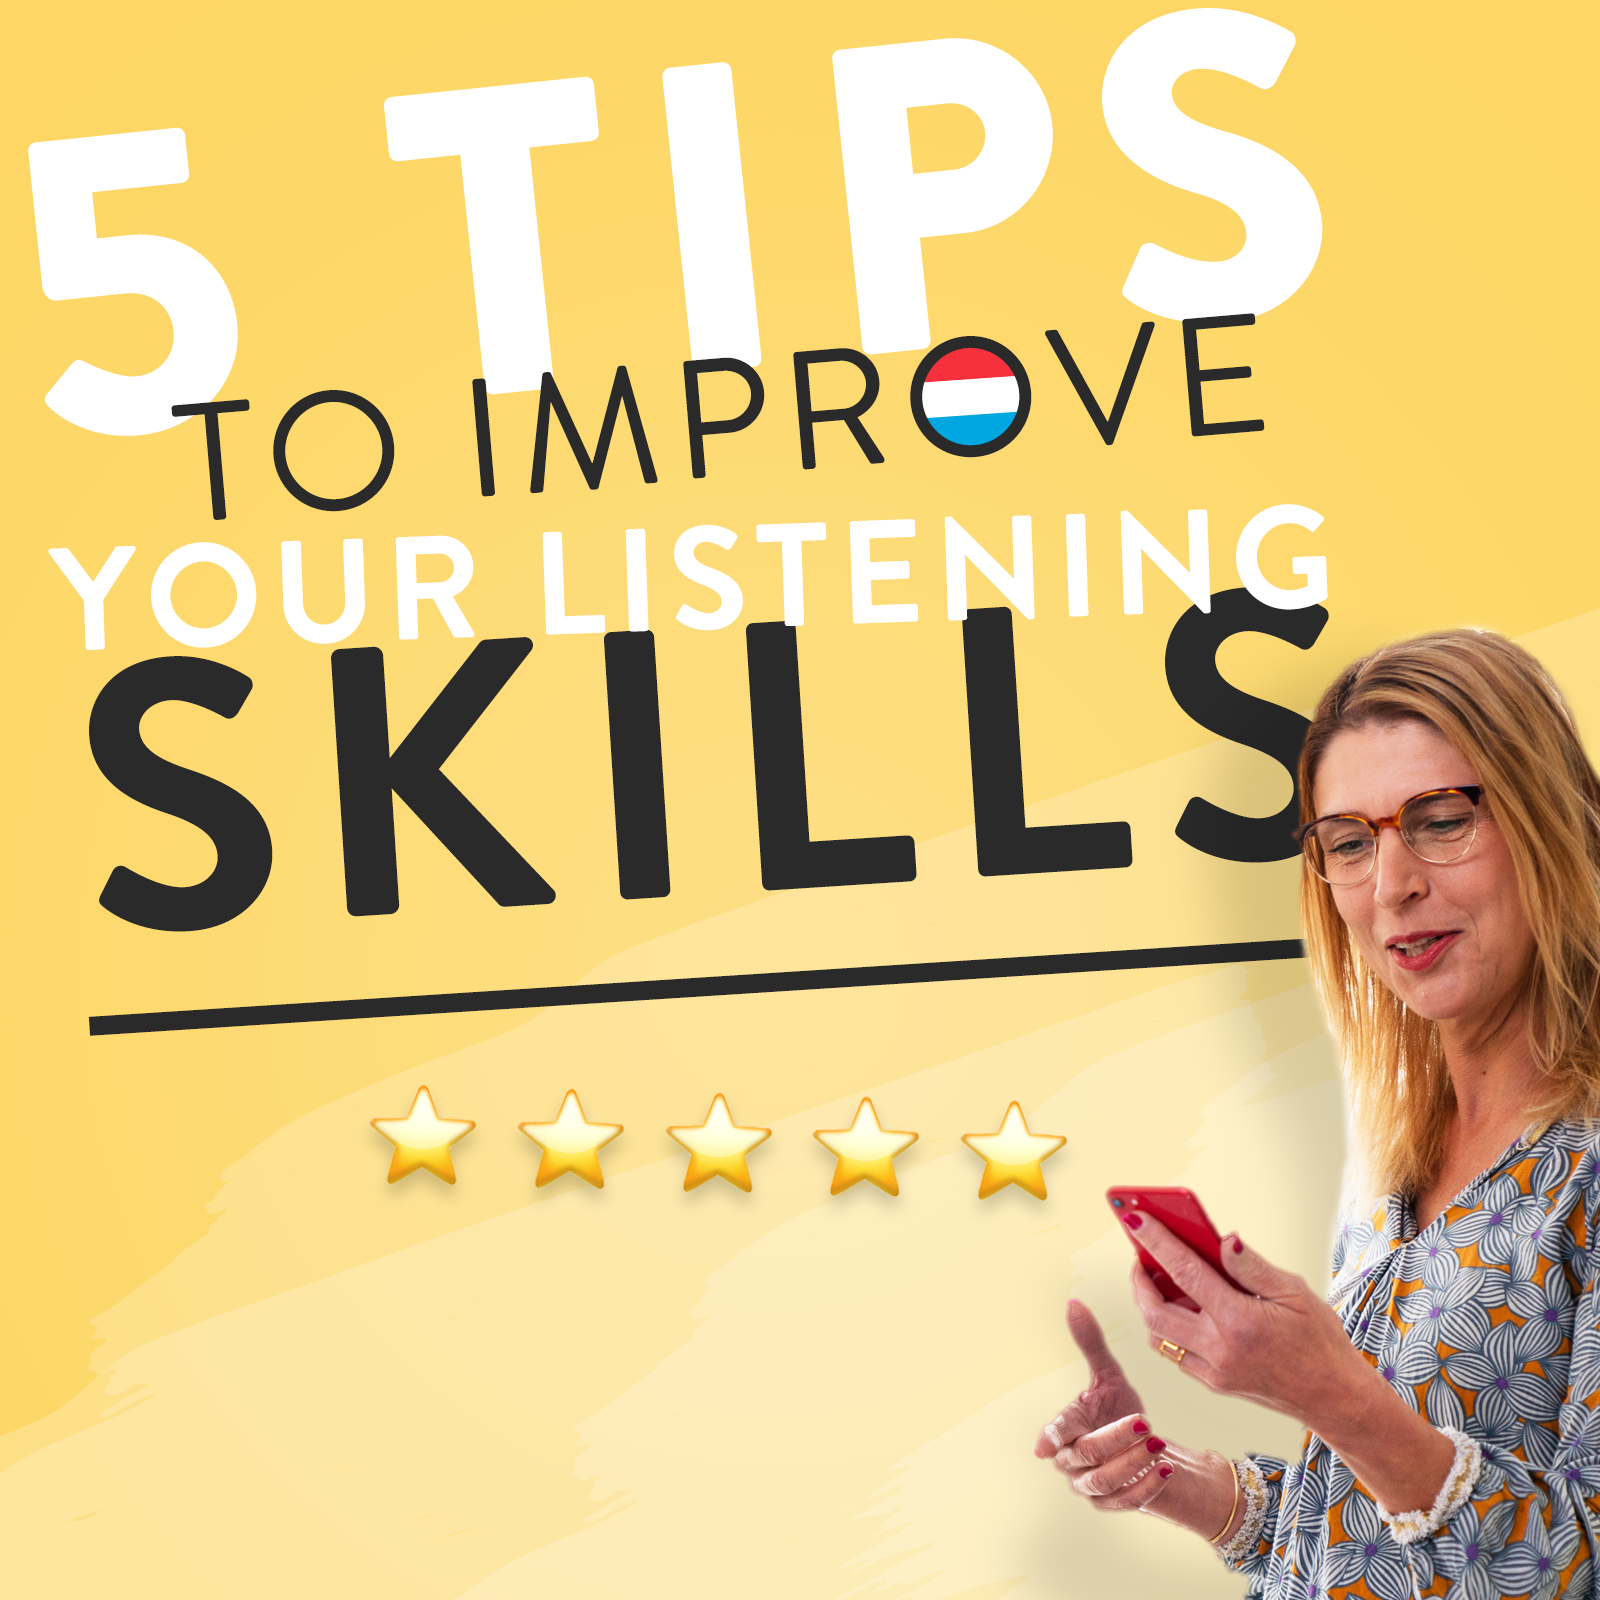 5 tips improve listening skills